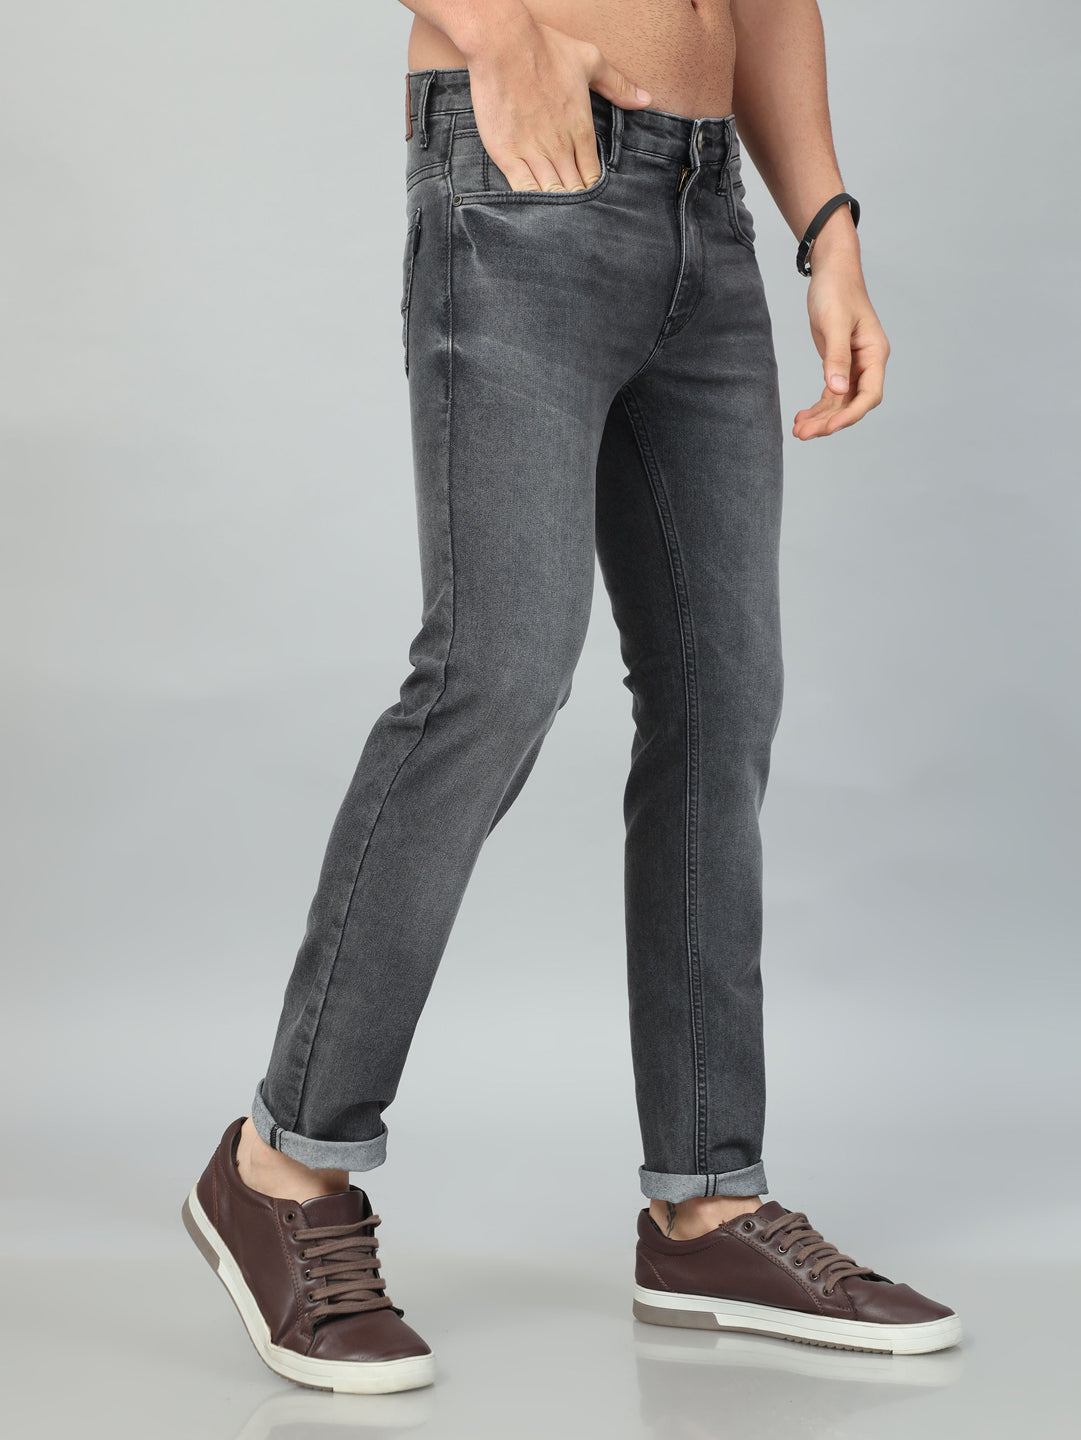 Creatywitty Slim Men Dark Grey Jeans - Buy Creatywitty Slim Men Dark Grey  Jeans Online at Best Prices in India | Flipkart.com